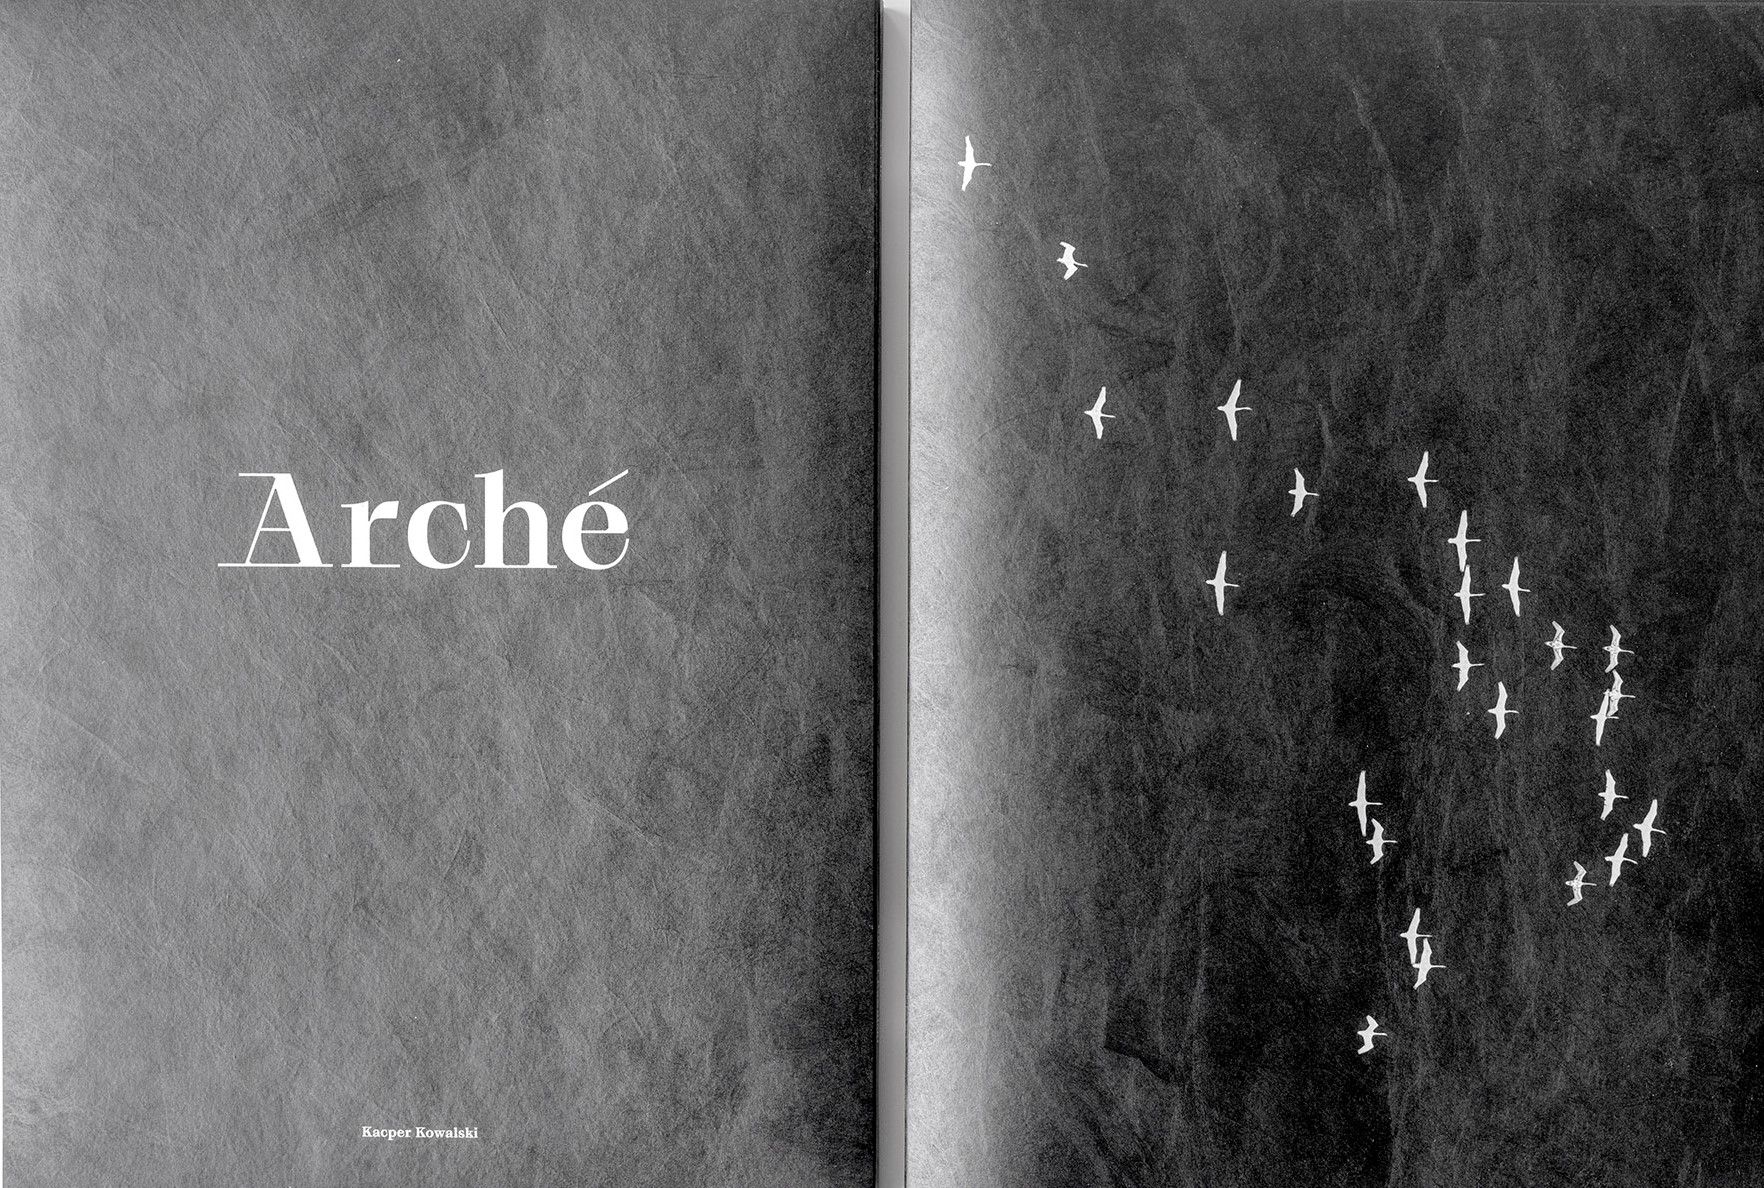 Arché, avagy visszatérés a kultúra kezdeteihez | Kacper Kowalski fotókönyve